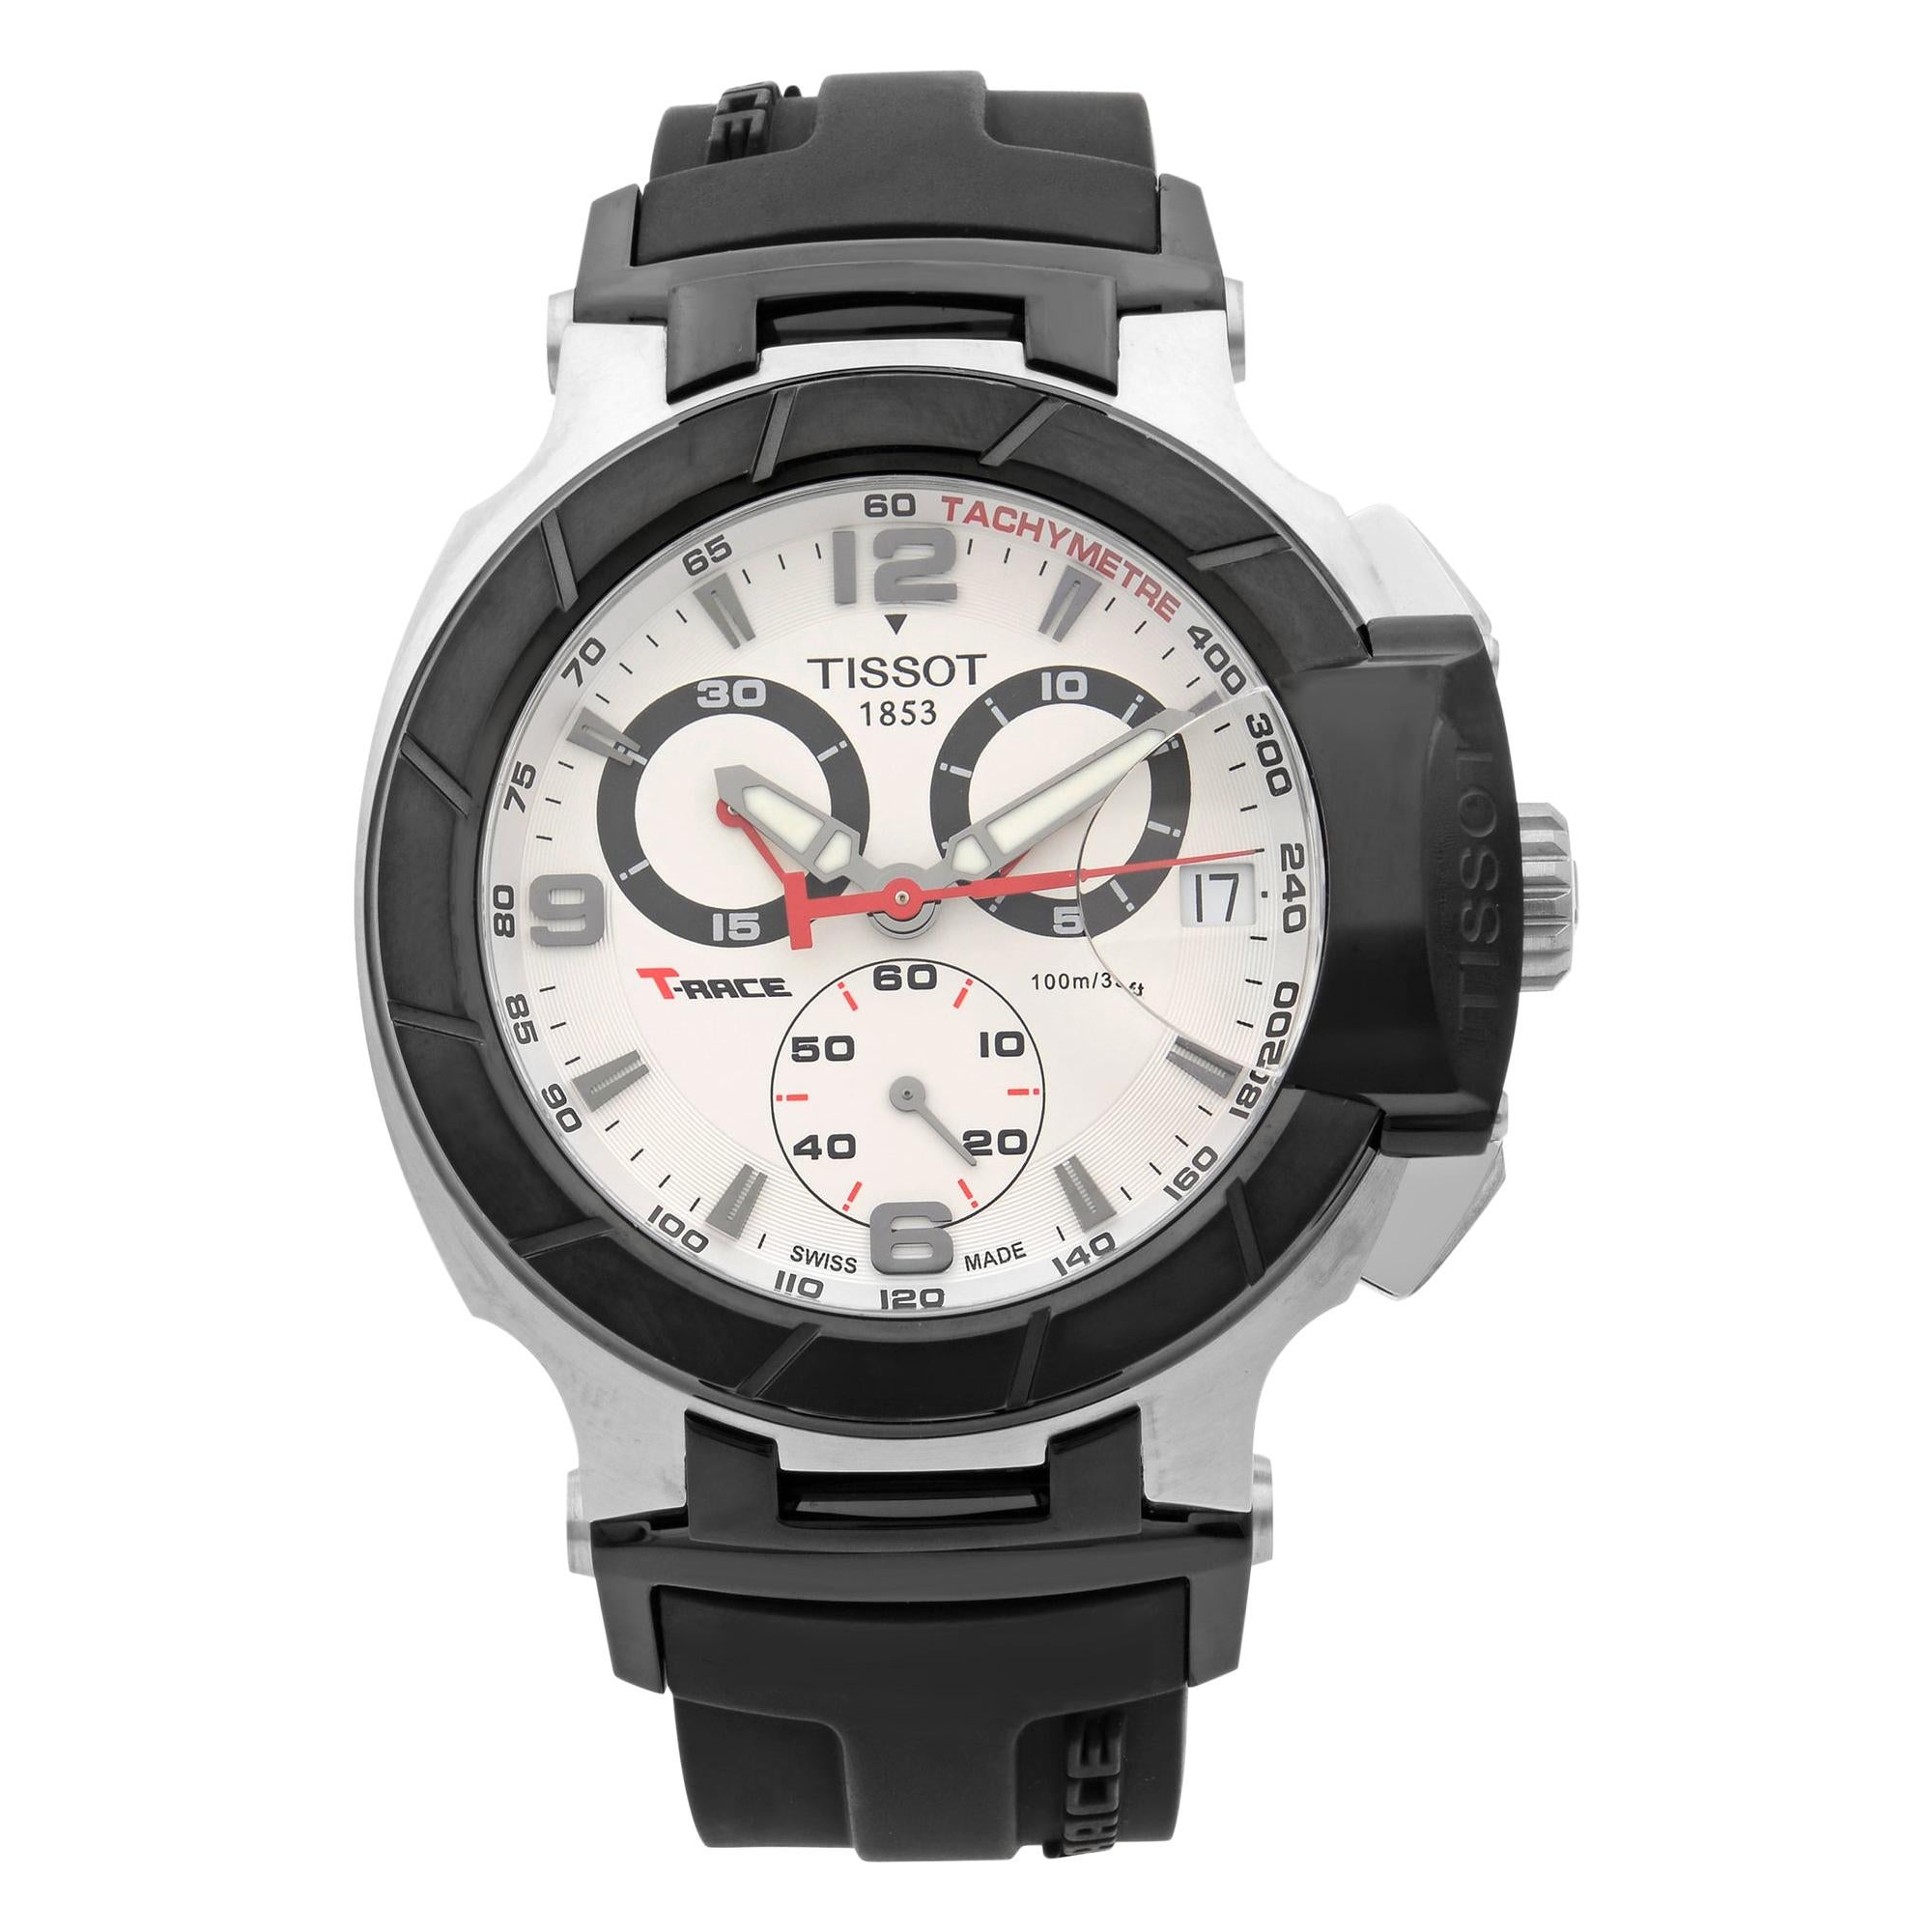 Tissot T-Race Chronograph Steel White Dial Quartz Men’s Watch T048.417.27.037.00